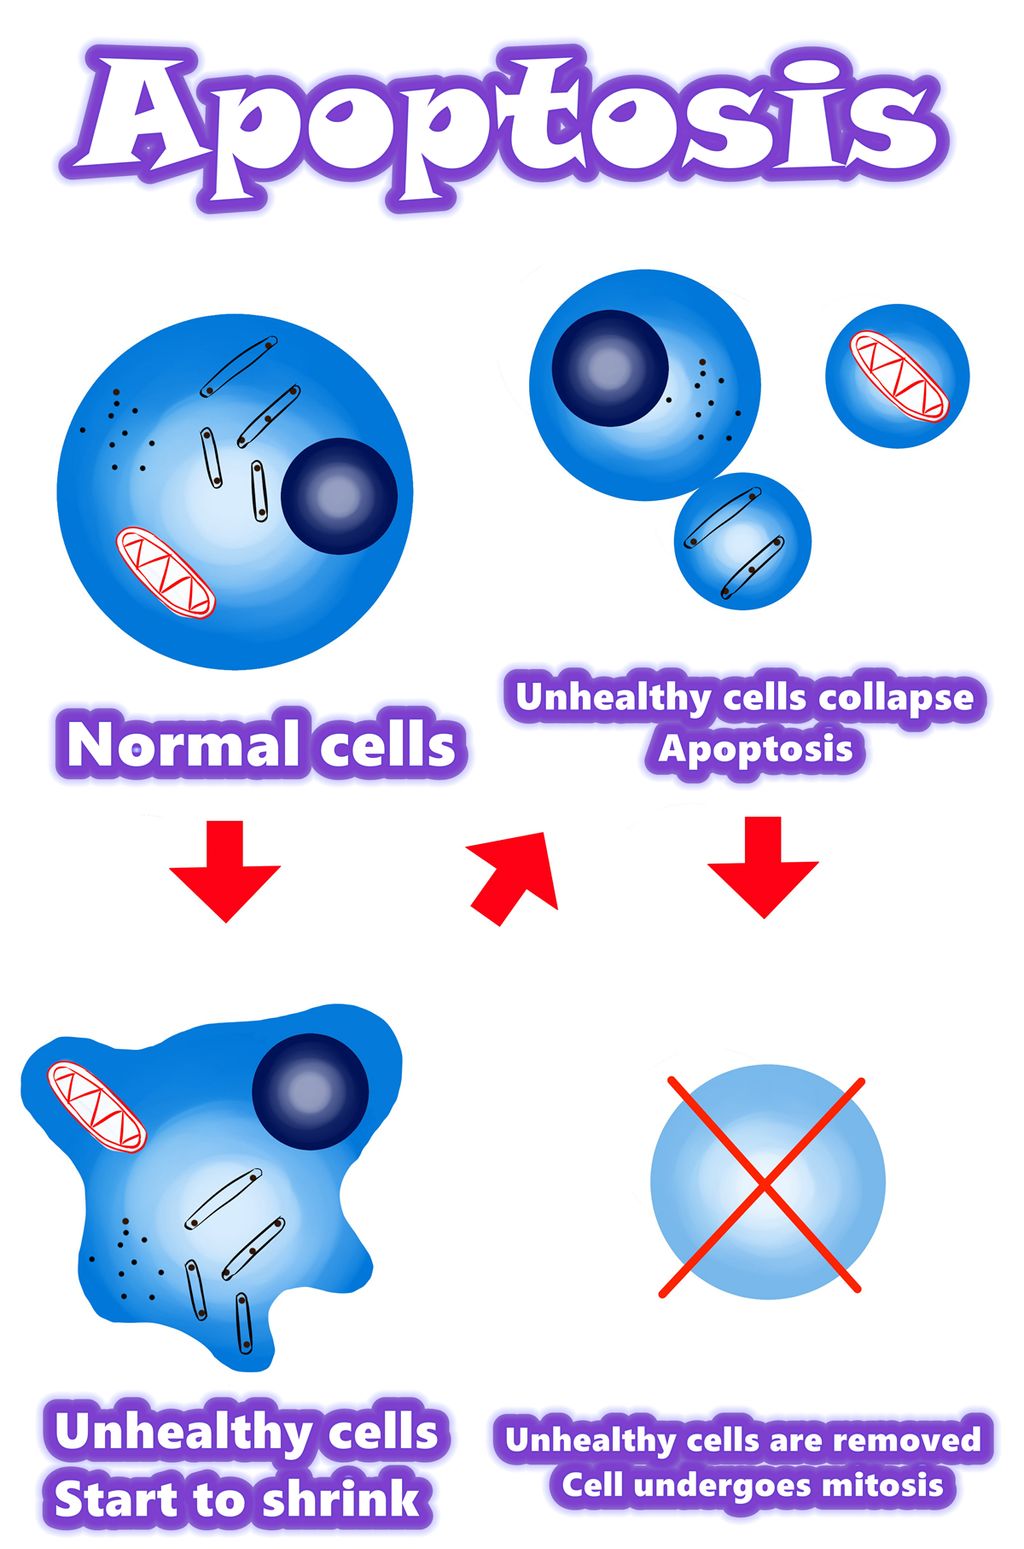 Solamargine | Paras ratkaisu syöpäsoluihin vuonna 2021 | Apoptoosi vs. syöpäsolut Apoptoosi vs. epänormaalit solut Apoptoosi vs. mutanttisolut Yleiskatsaus / yhteenveto / apoptoosimekanismi